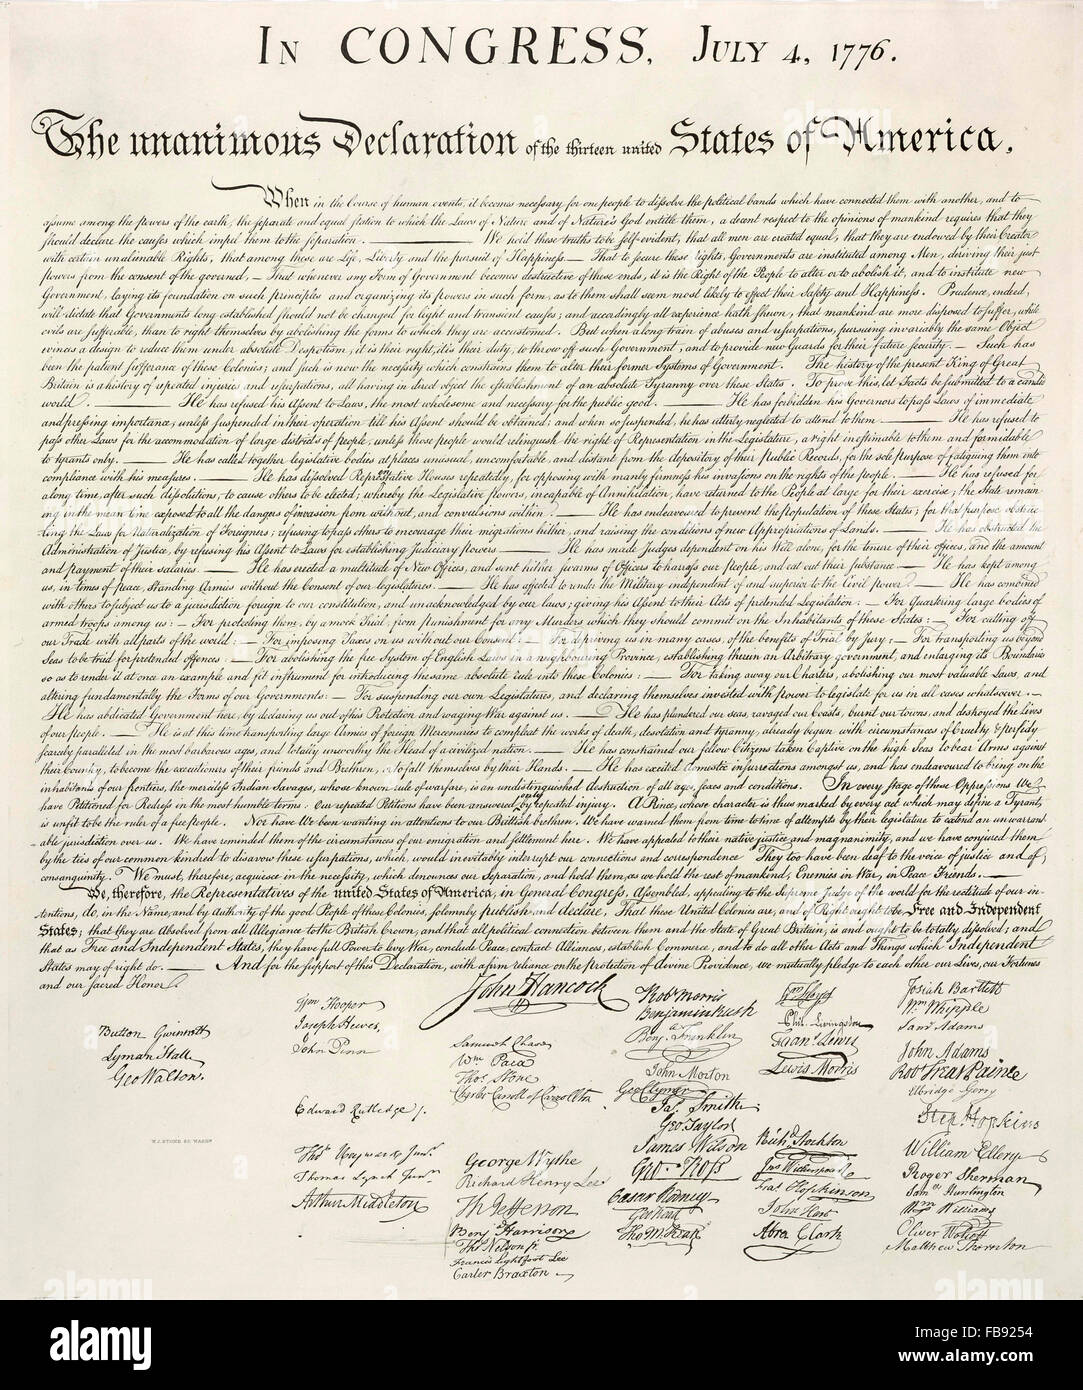 Déclaration de l'indépendance. Un fac-similé de la pierre 1823 1776 Déclaration d'indépendance des Etats-Unis Banque D'Images